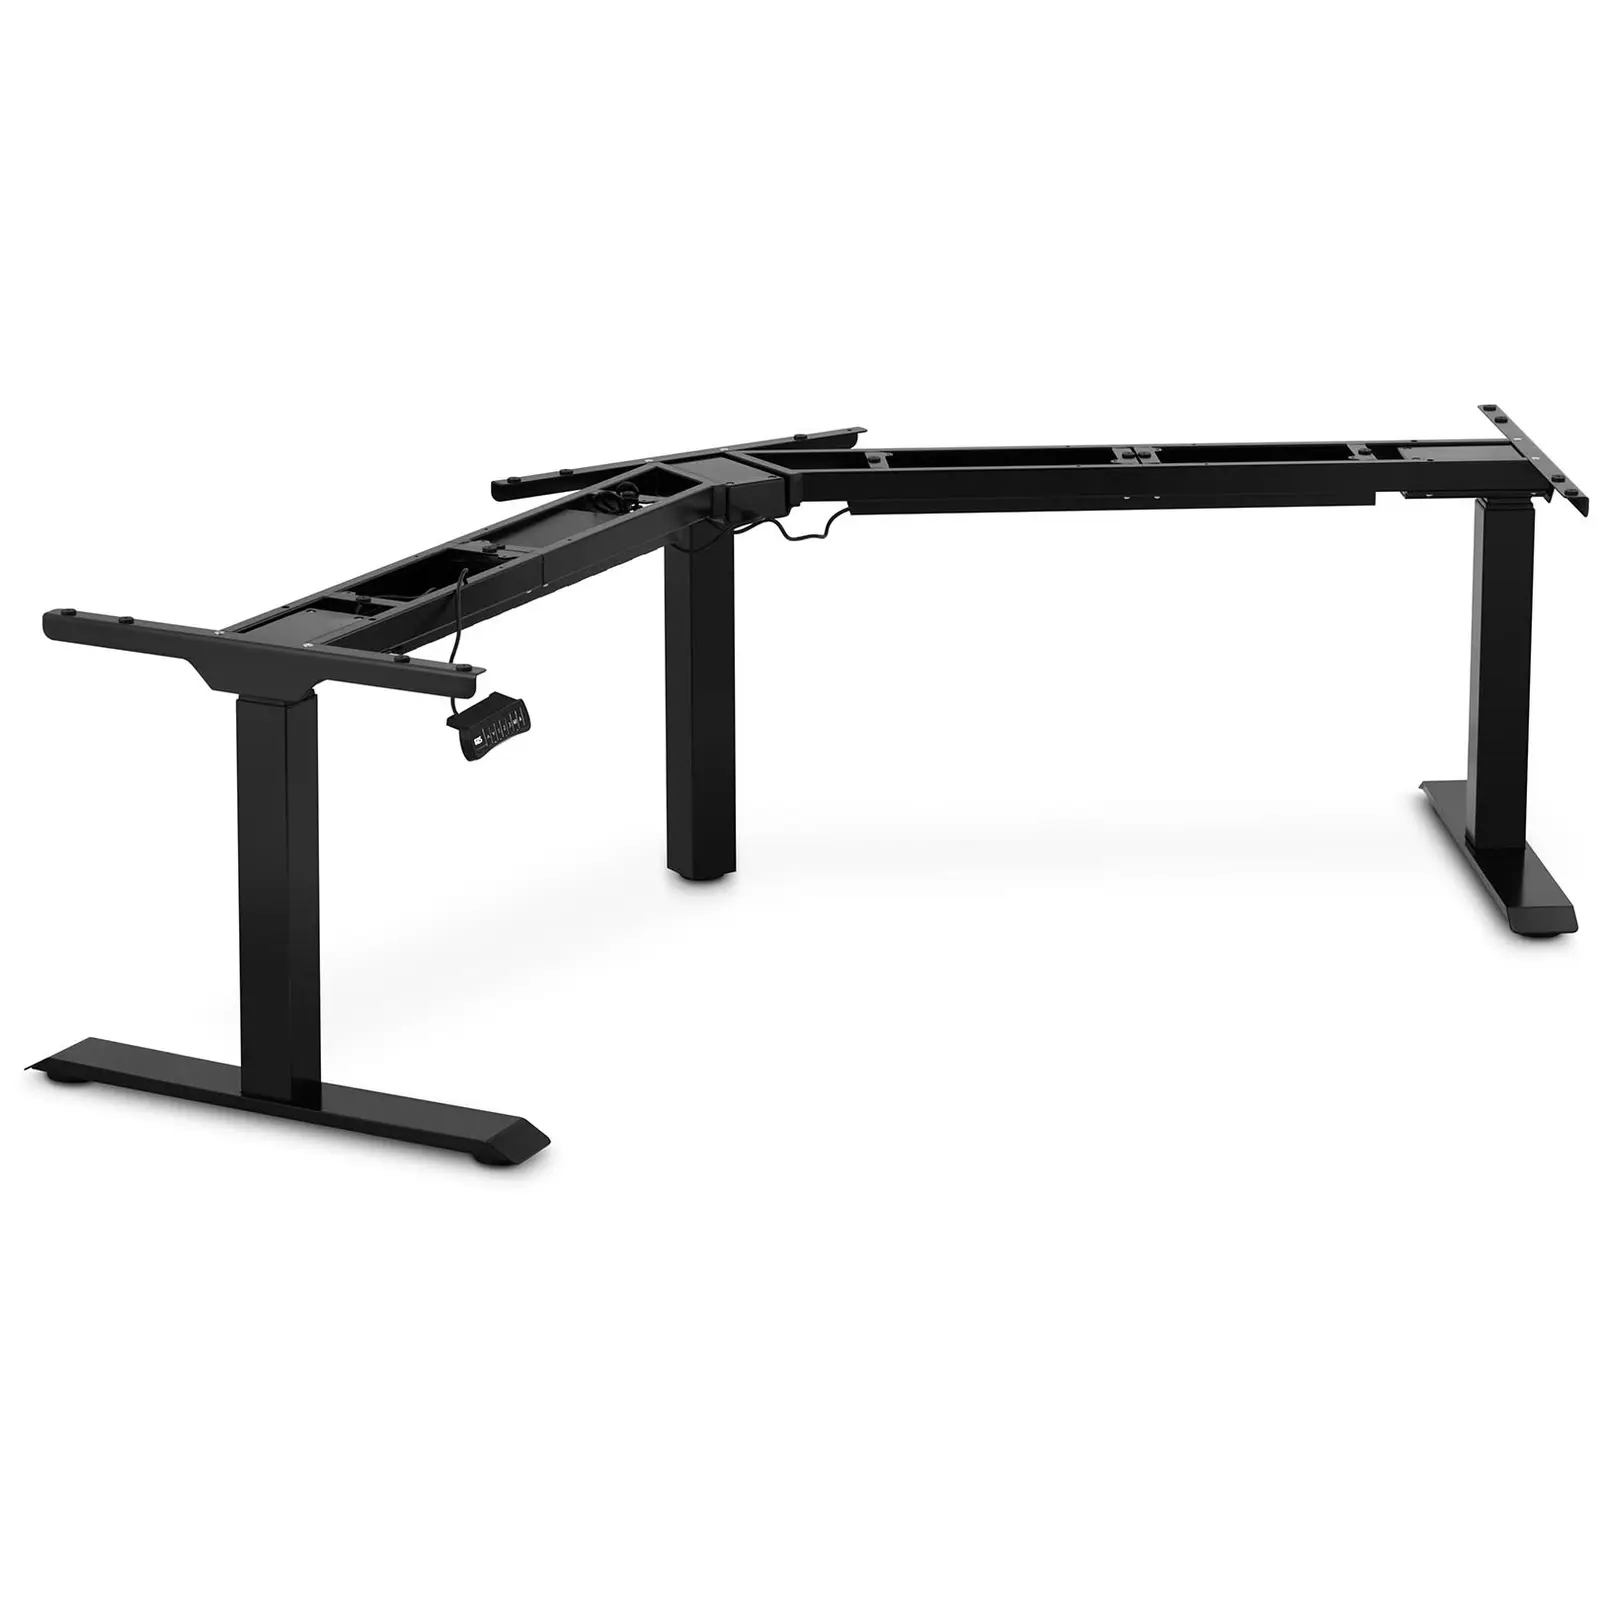 Adjustable Corner Desk Frame - Height: 60-125 cm - Width left/right: 116-186 cm - Angle: 120° - 150 kg